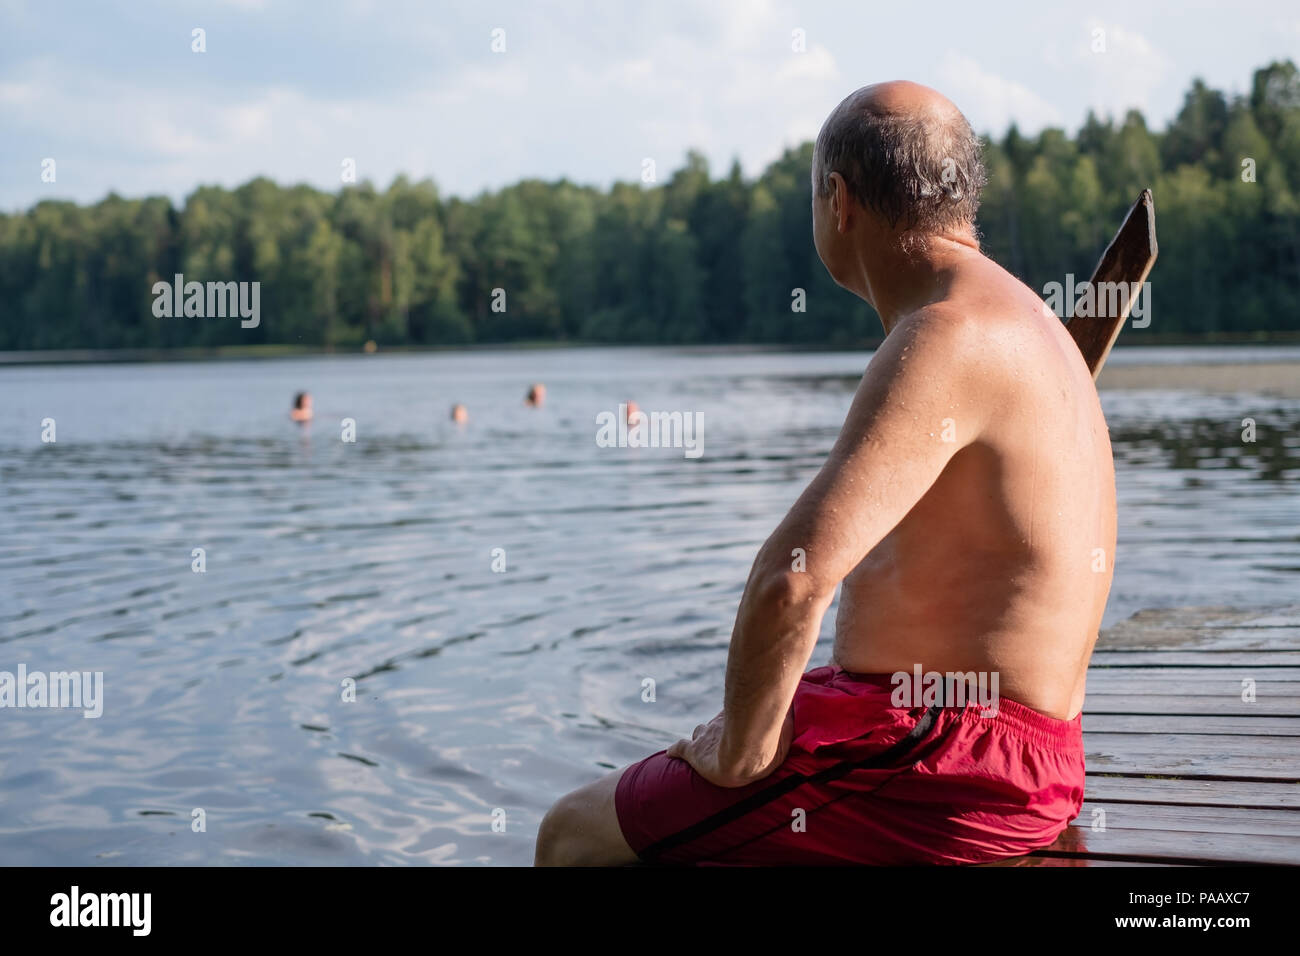 Bel uomo maturo seduta sulle sponde di un lago in una posizione soleggiata e tranquilla giornata, seduto su di un molo di legno appoggiata in villaggio Foto Stock